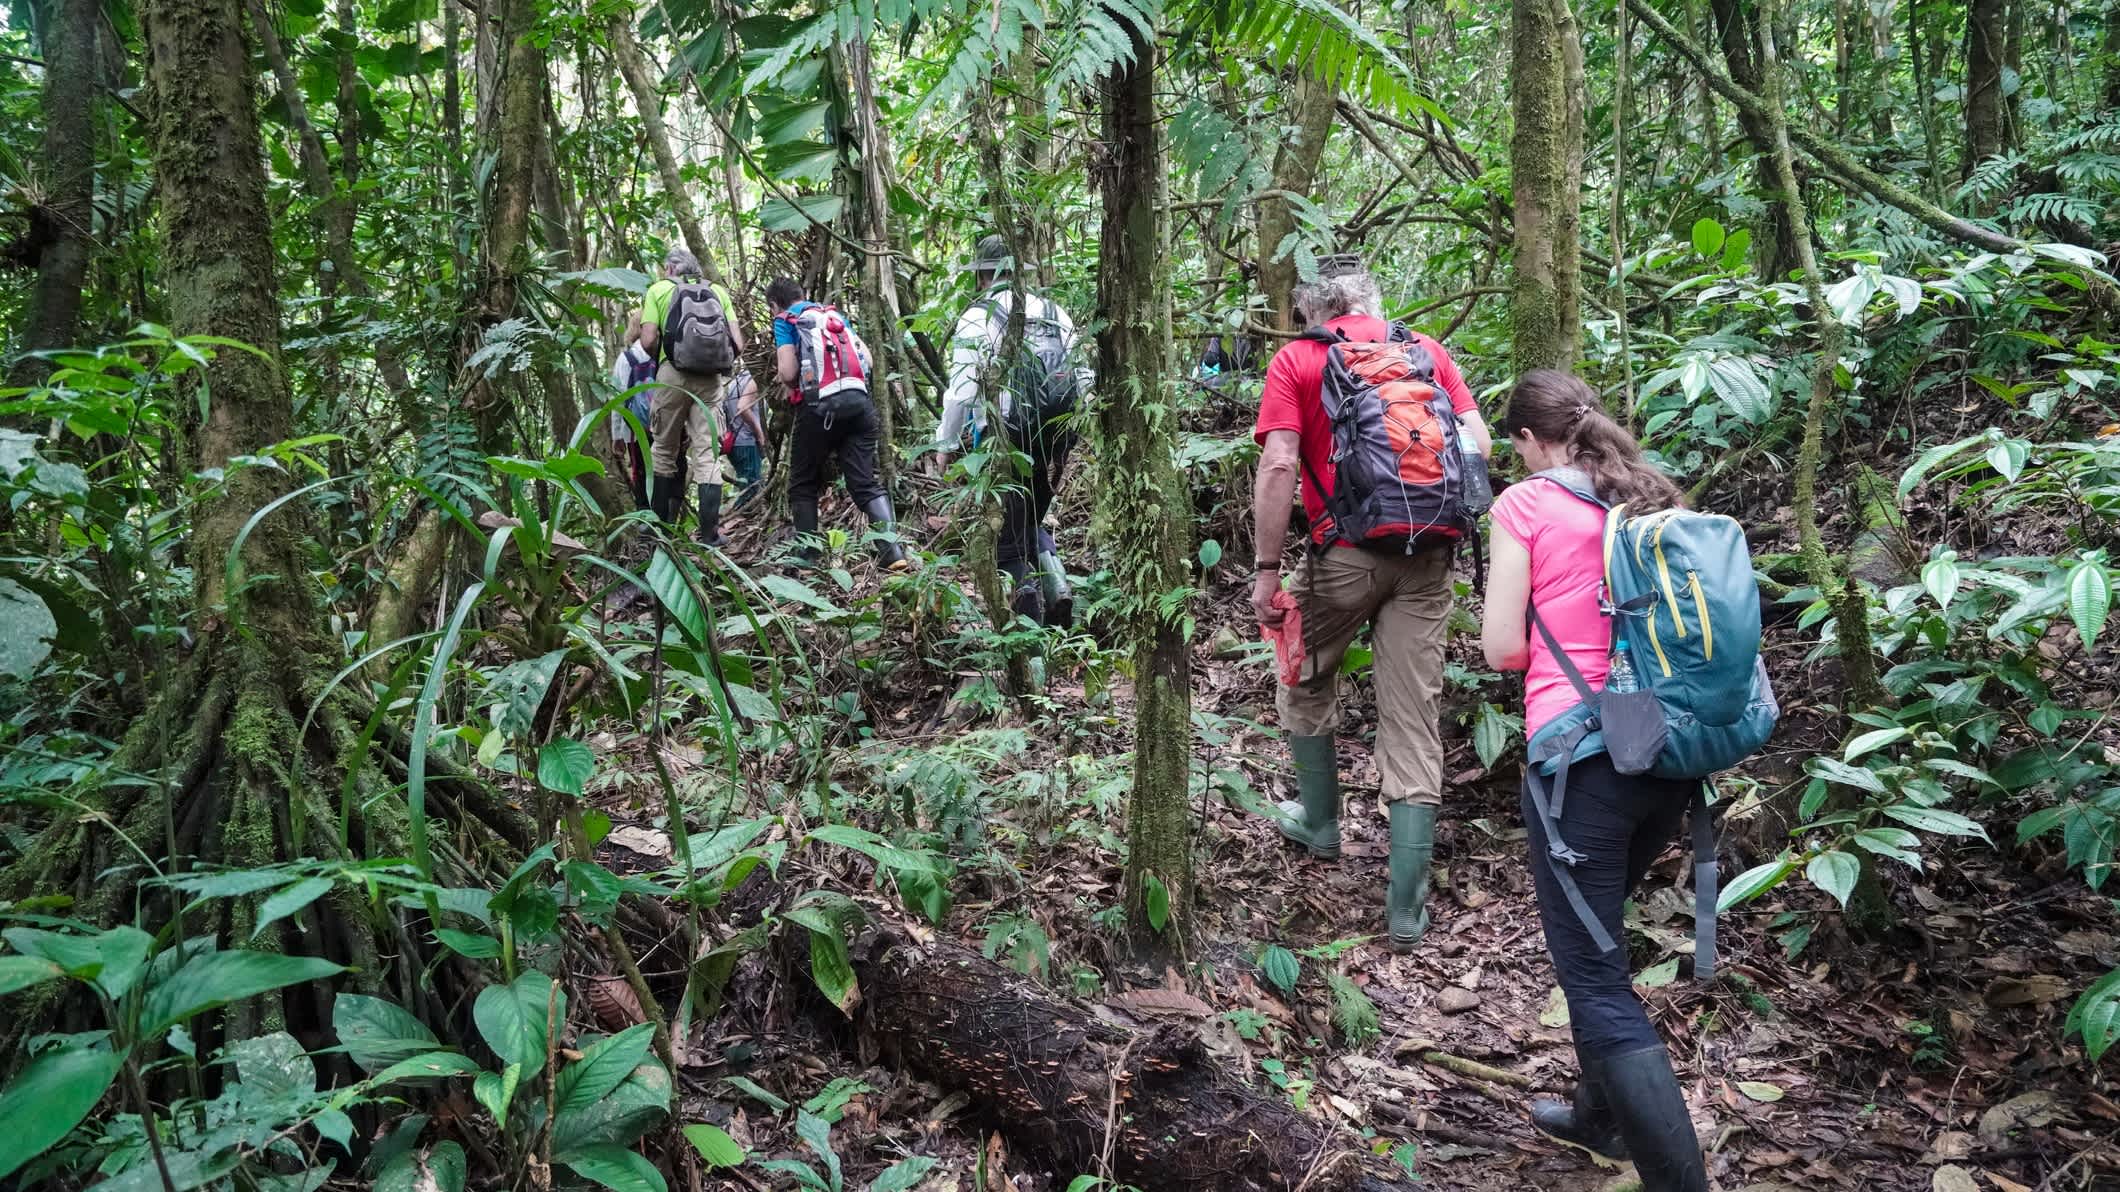 Tourgruppe mit Guide wandert durch den Amazonas-Regenwald